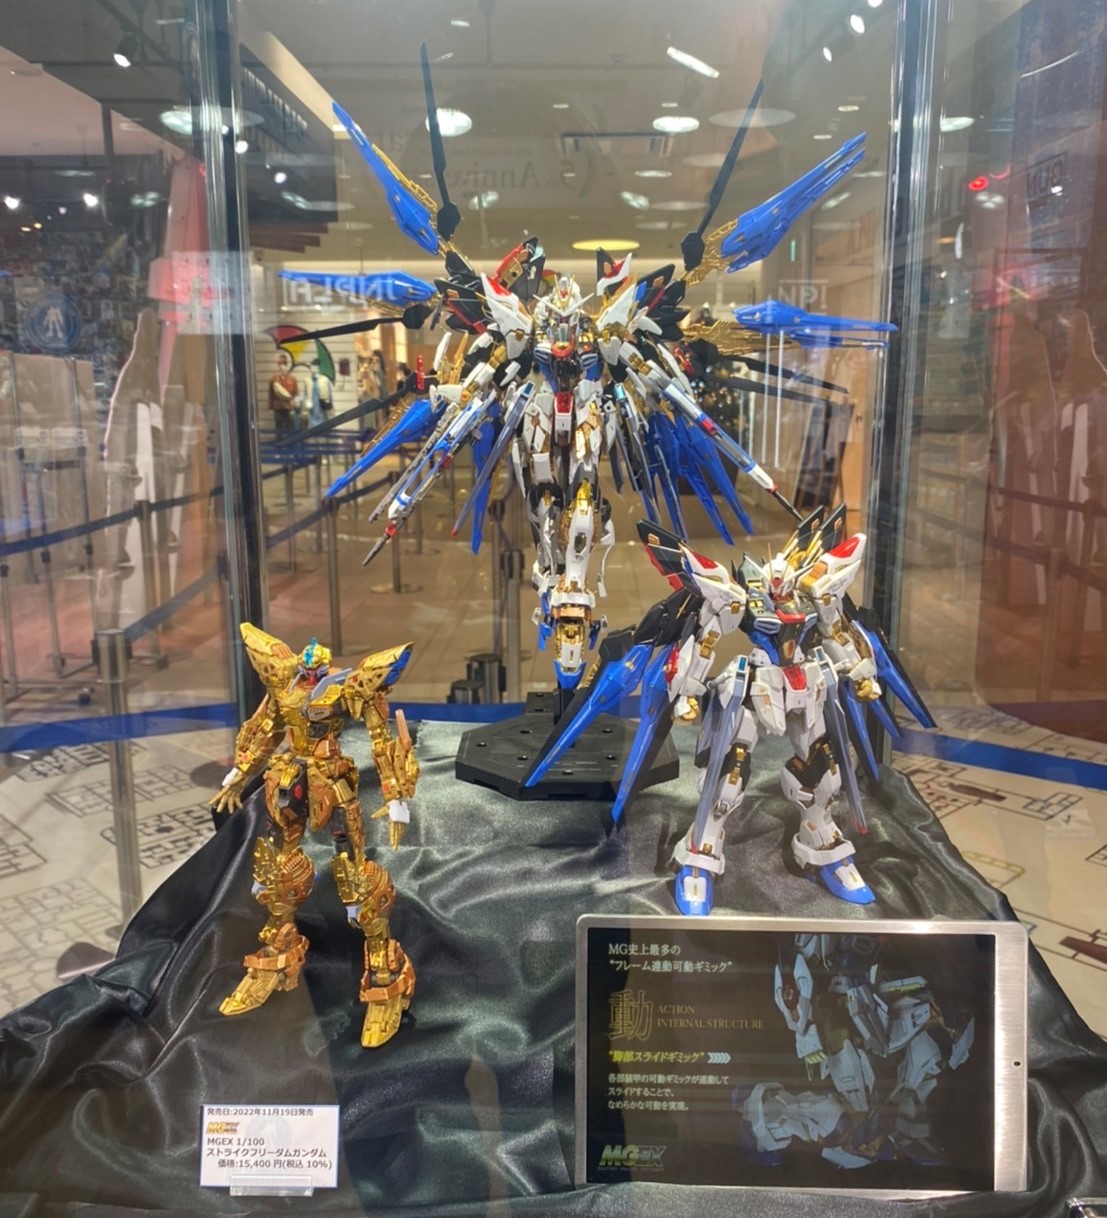 制作レポート 15 2 Mgex 1 100 ストライクフリーダムガンダム編 Part 2 The Gundam Base Tokyo Blog The Gundam Base ガンダムベース公式サイト